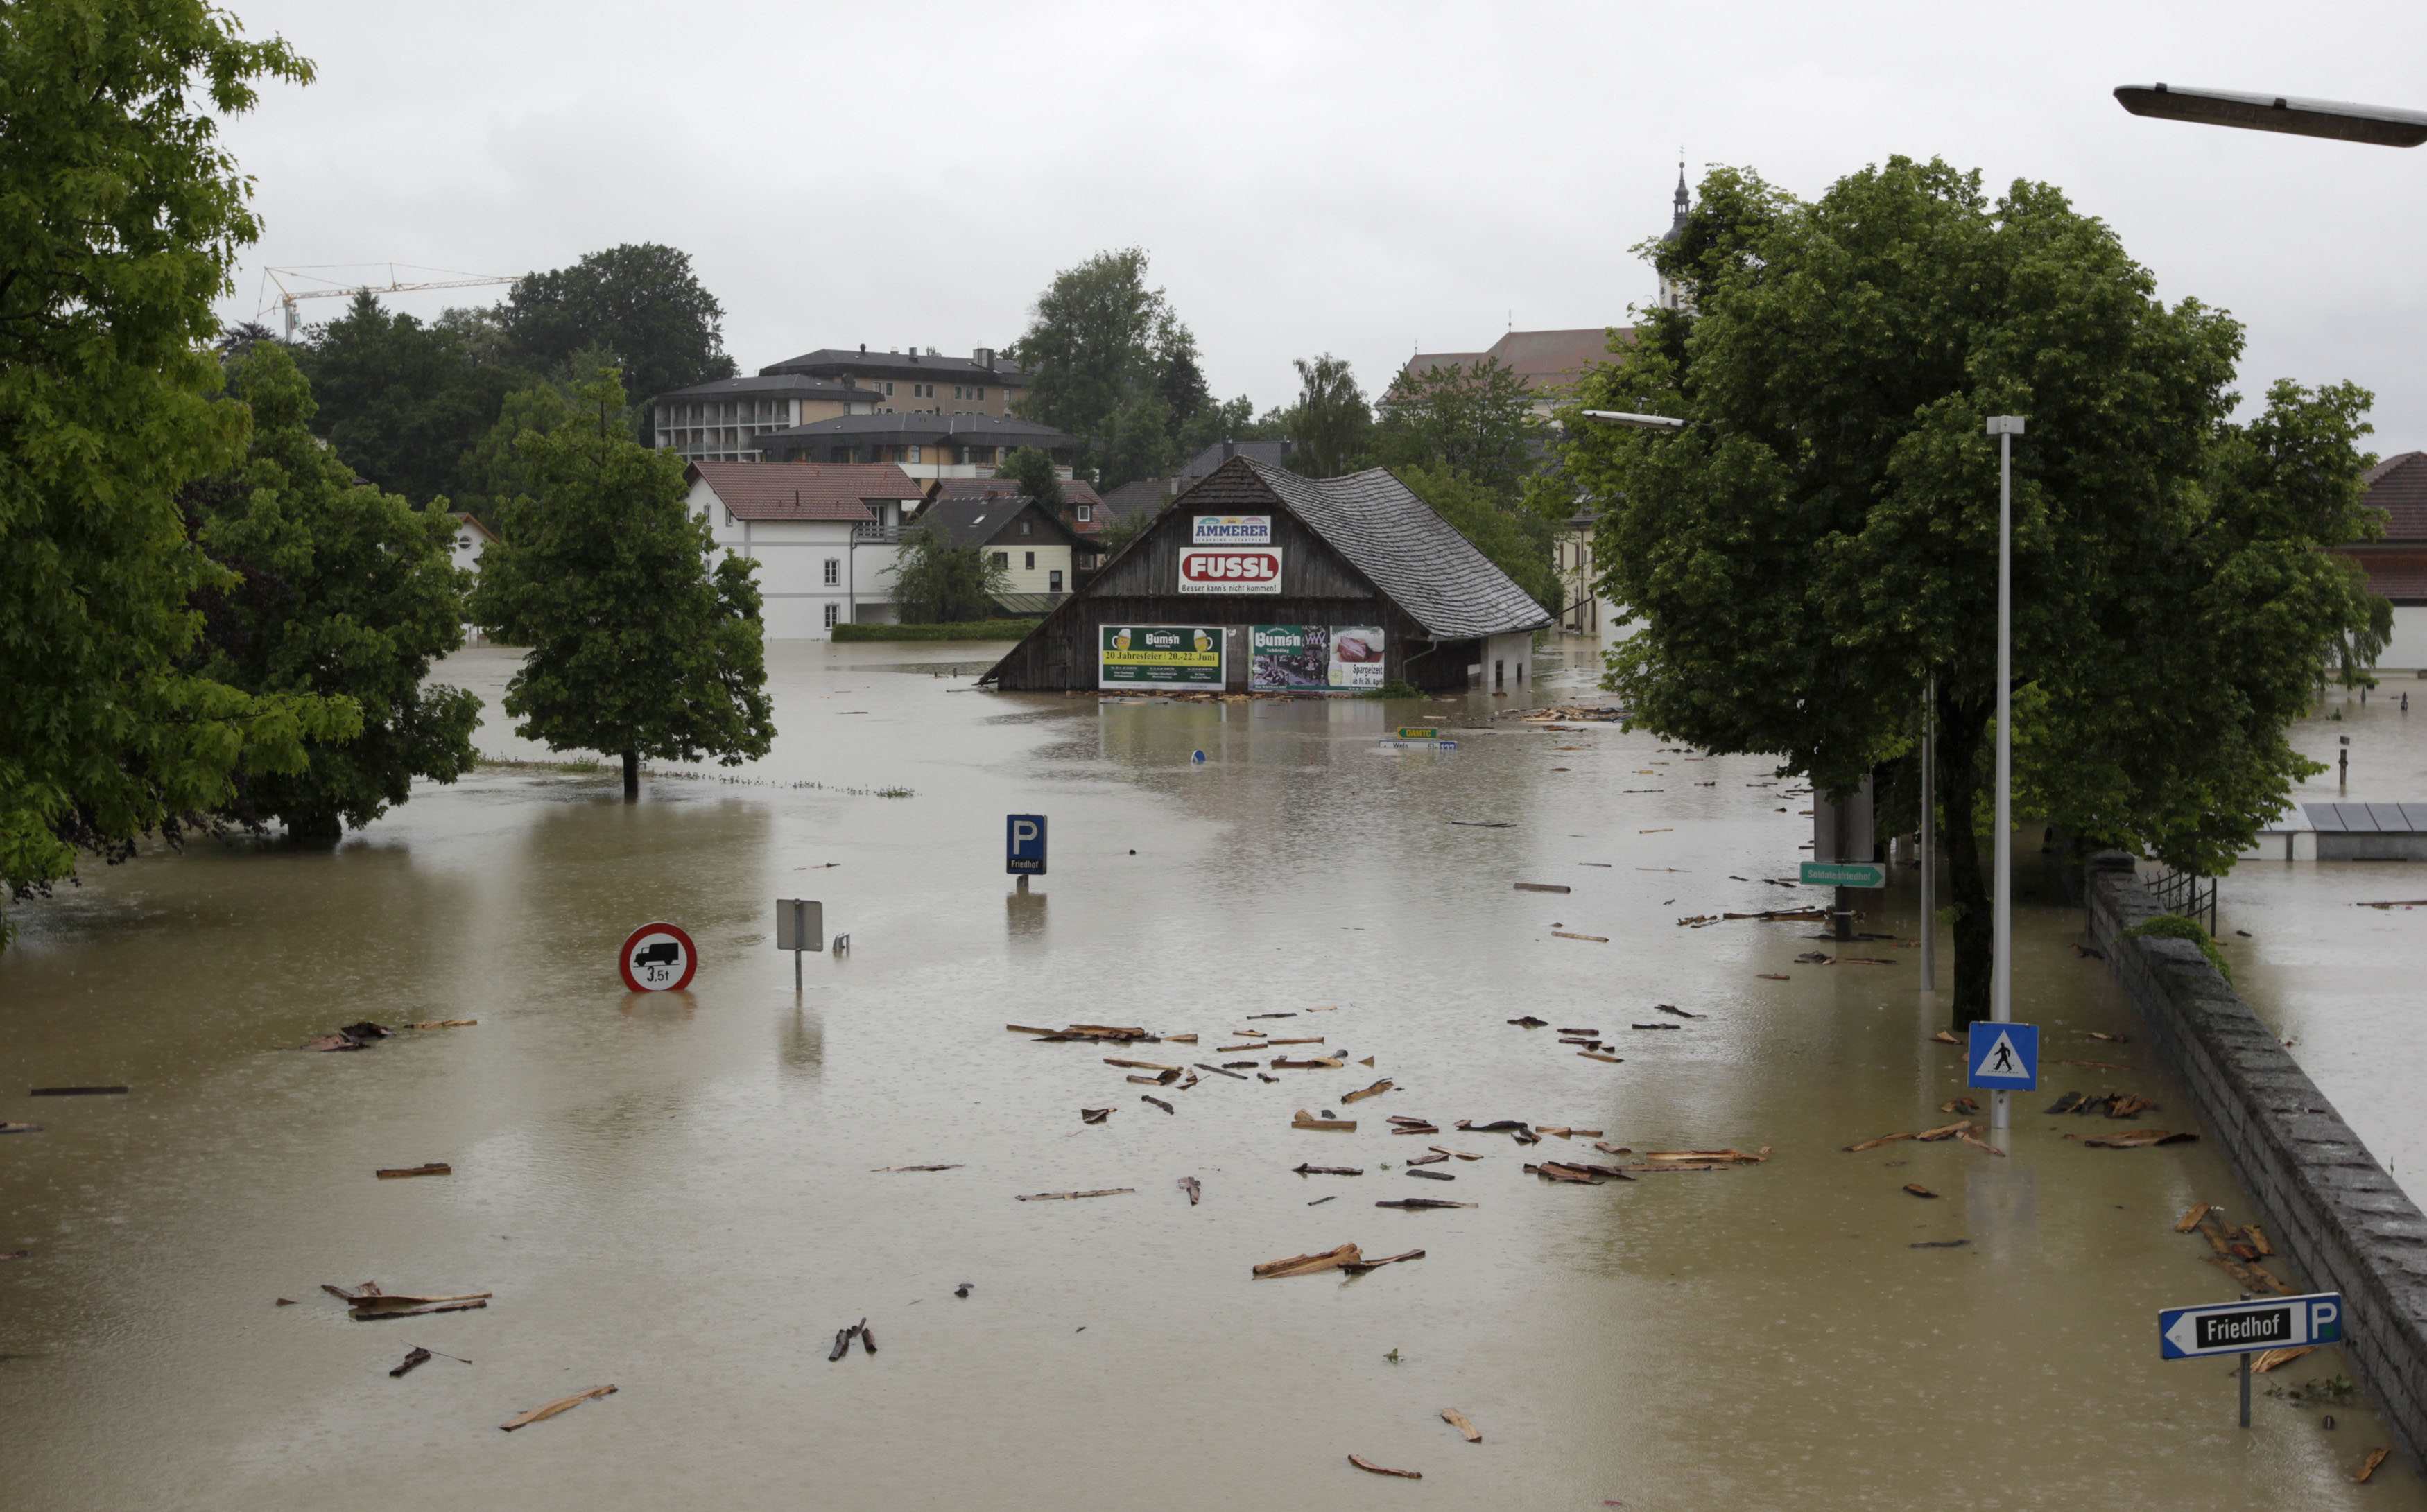 Συγκλονιστικές εικόνες από τις πλημμύρες στην κεντρική Ευρώπη – Τουλάχιστον 6 νεκροί και πολλοί αγνοούμενοι